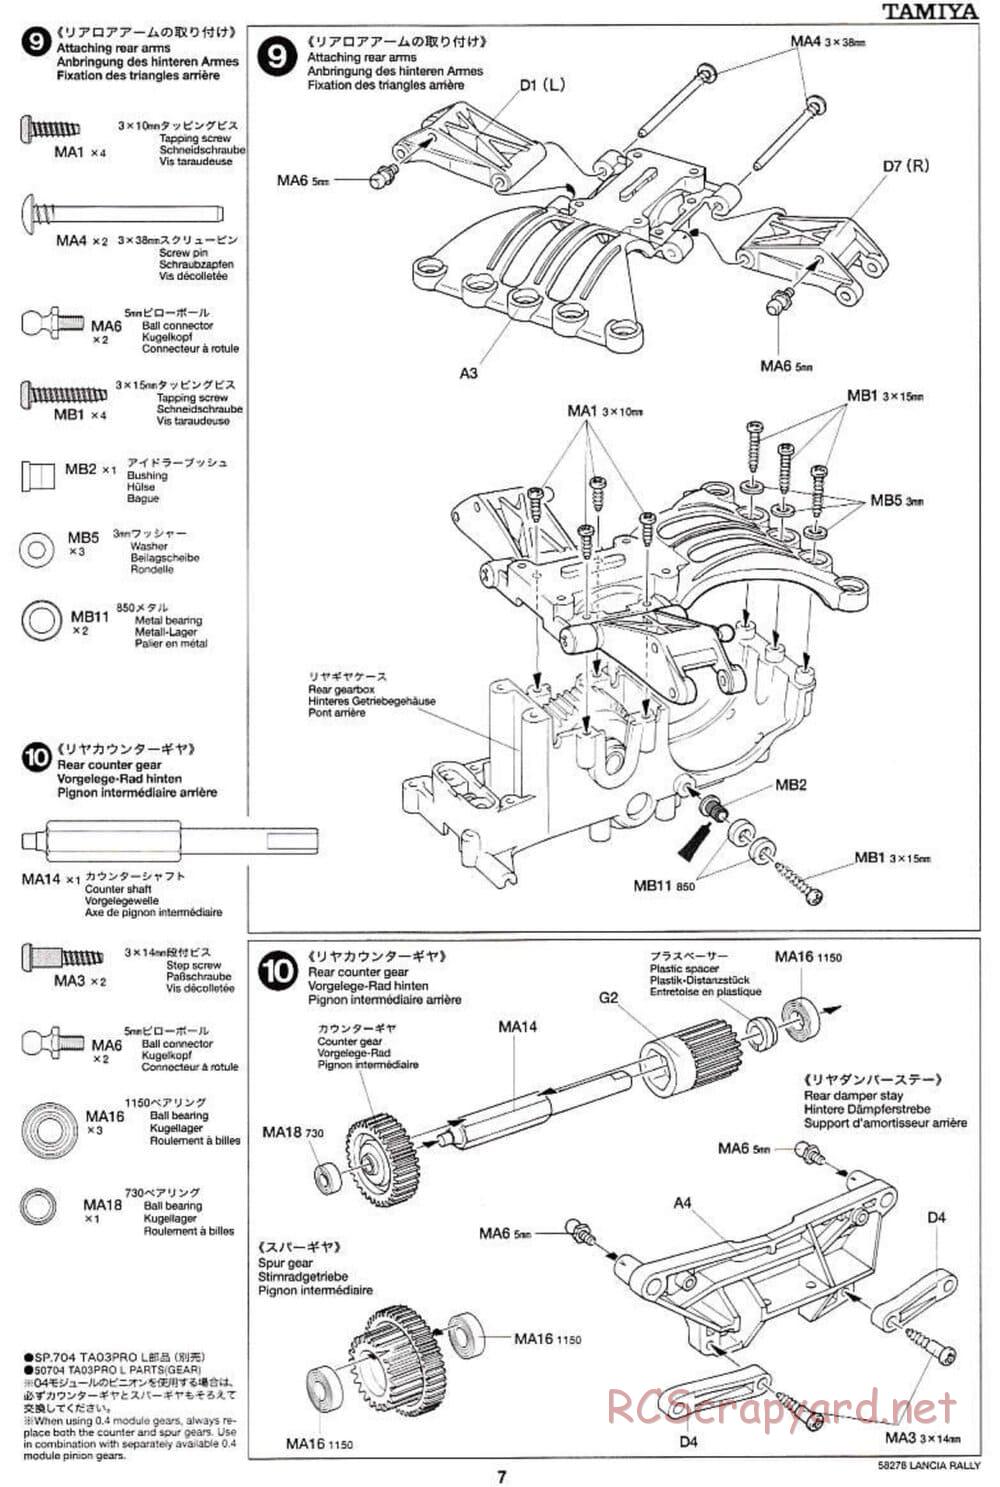 Tamiya - Lancia 037 Rally - TA-03RS Chassis - Manual - Page 7